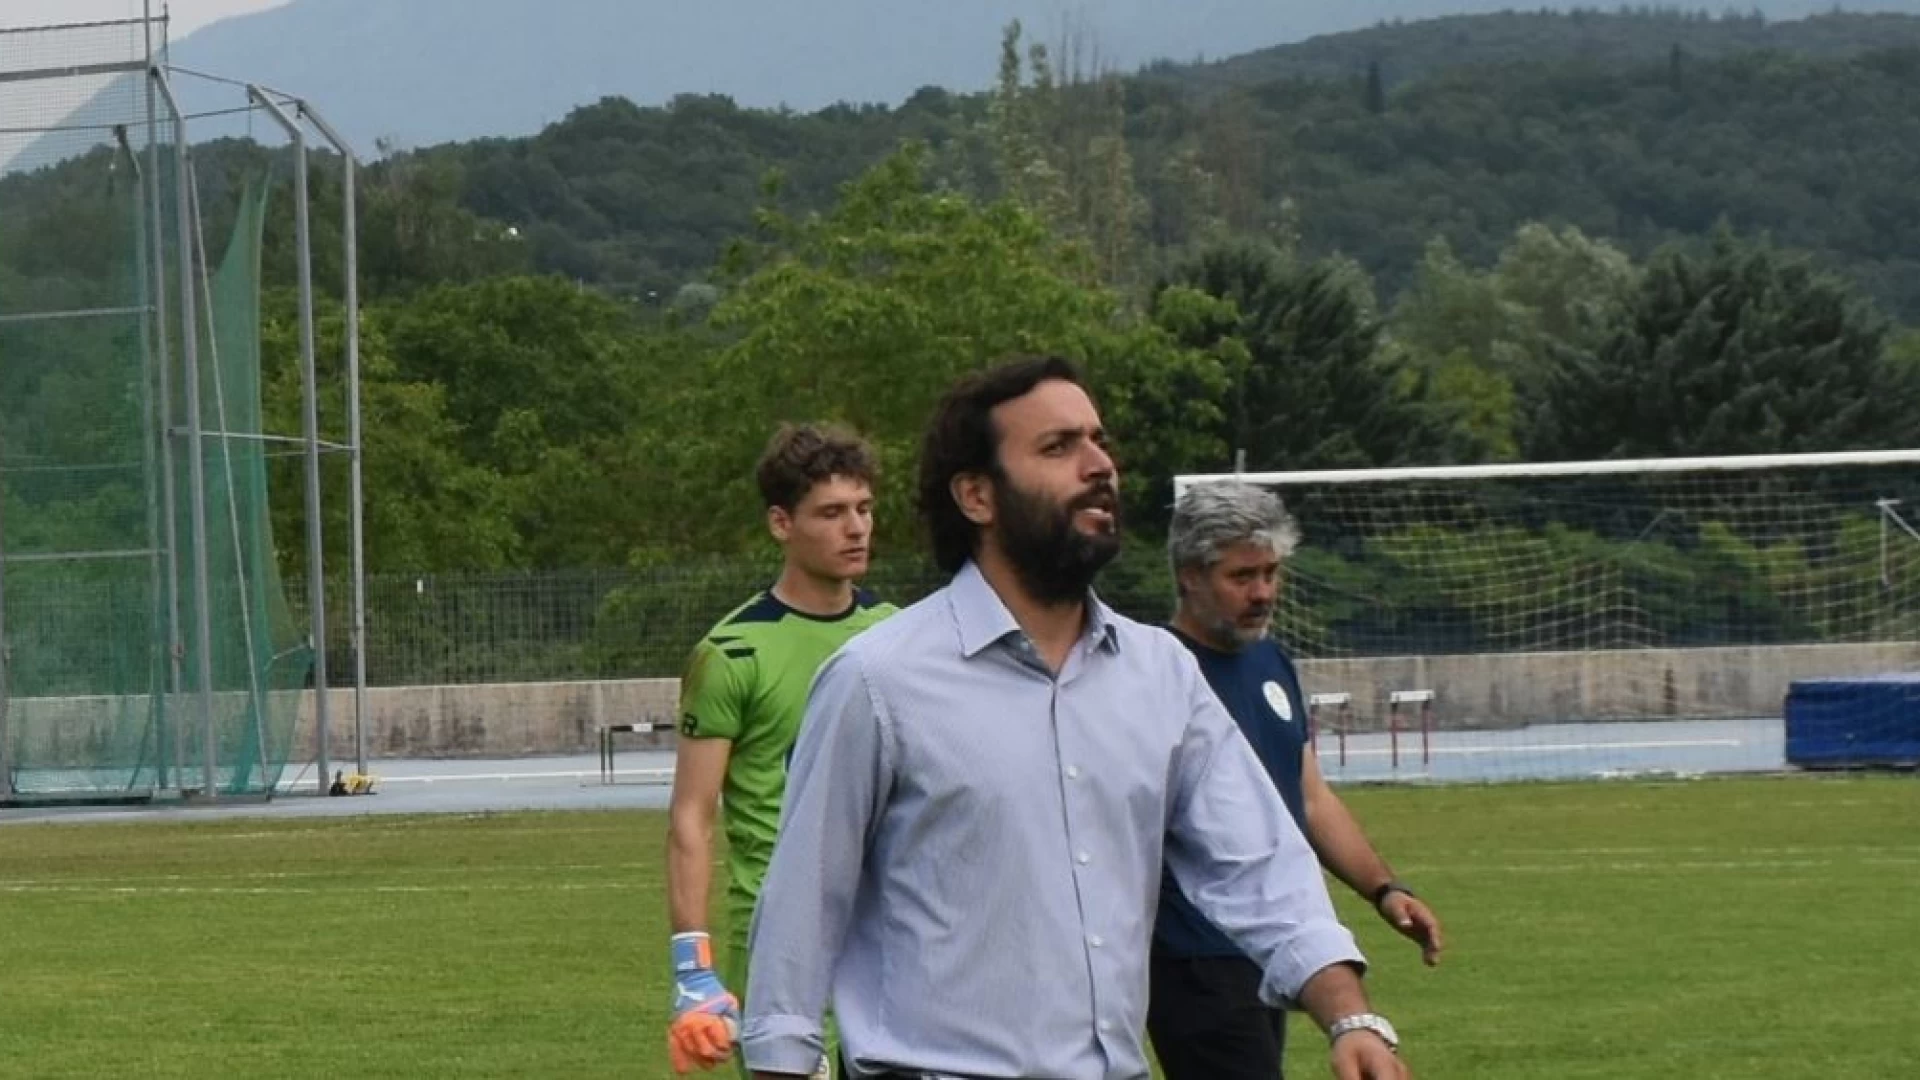 Eccellenza: Esclusiva Newsdellavalle. Il Direttore sportivo Santonastaso lascia il Città di Isernia.